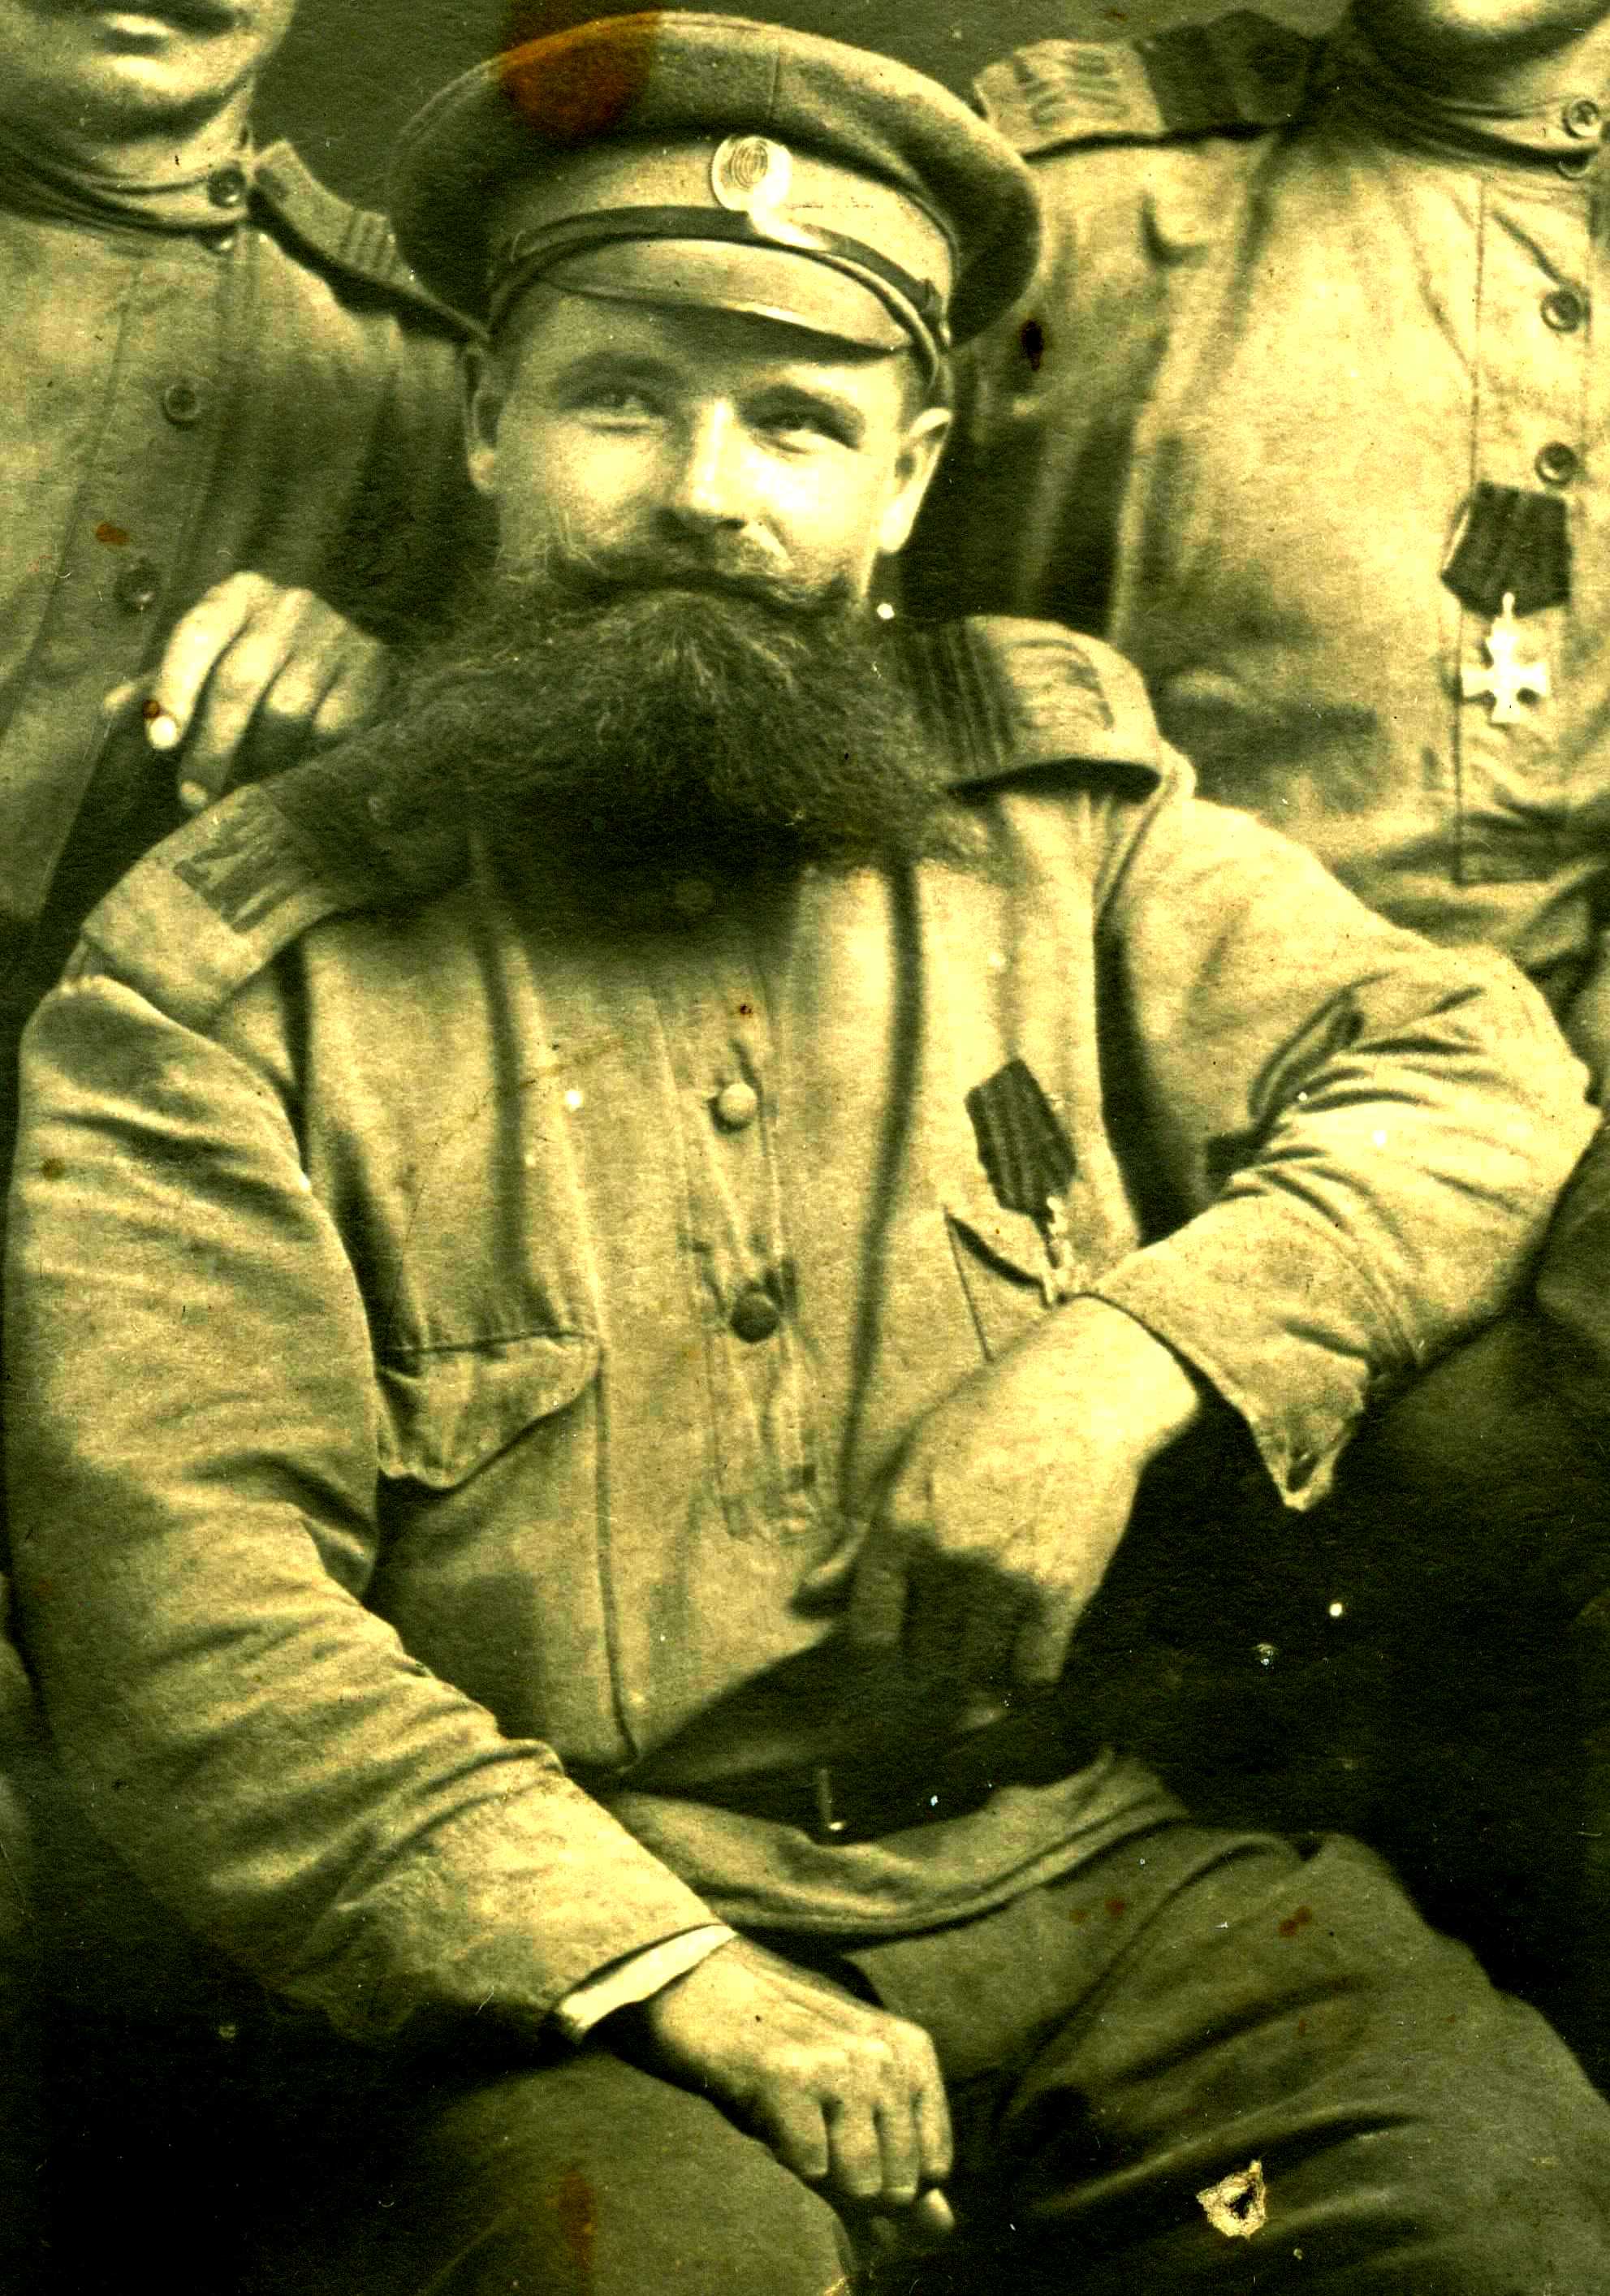 Филимонов Николай Степанович, 210 Бронницкий пехотный полк